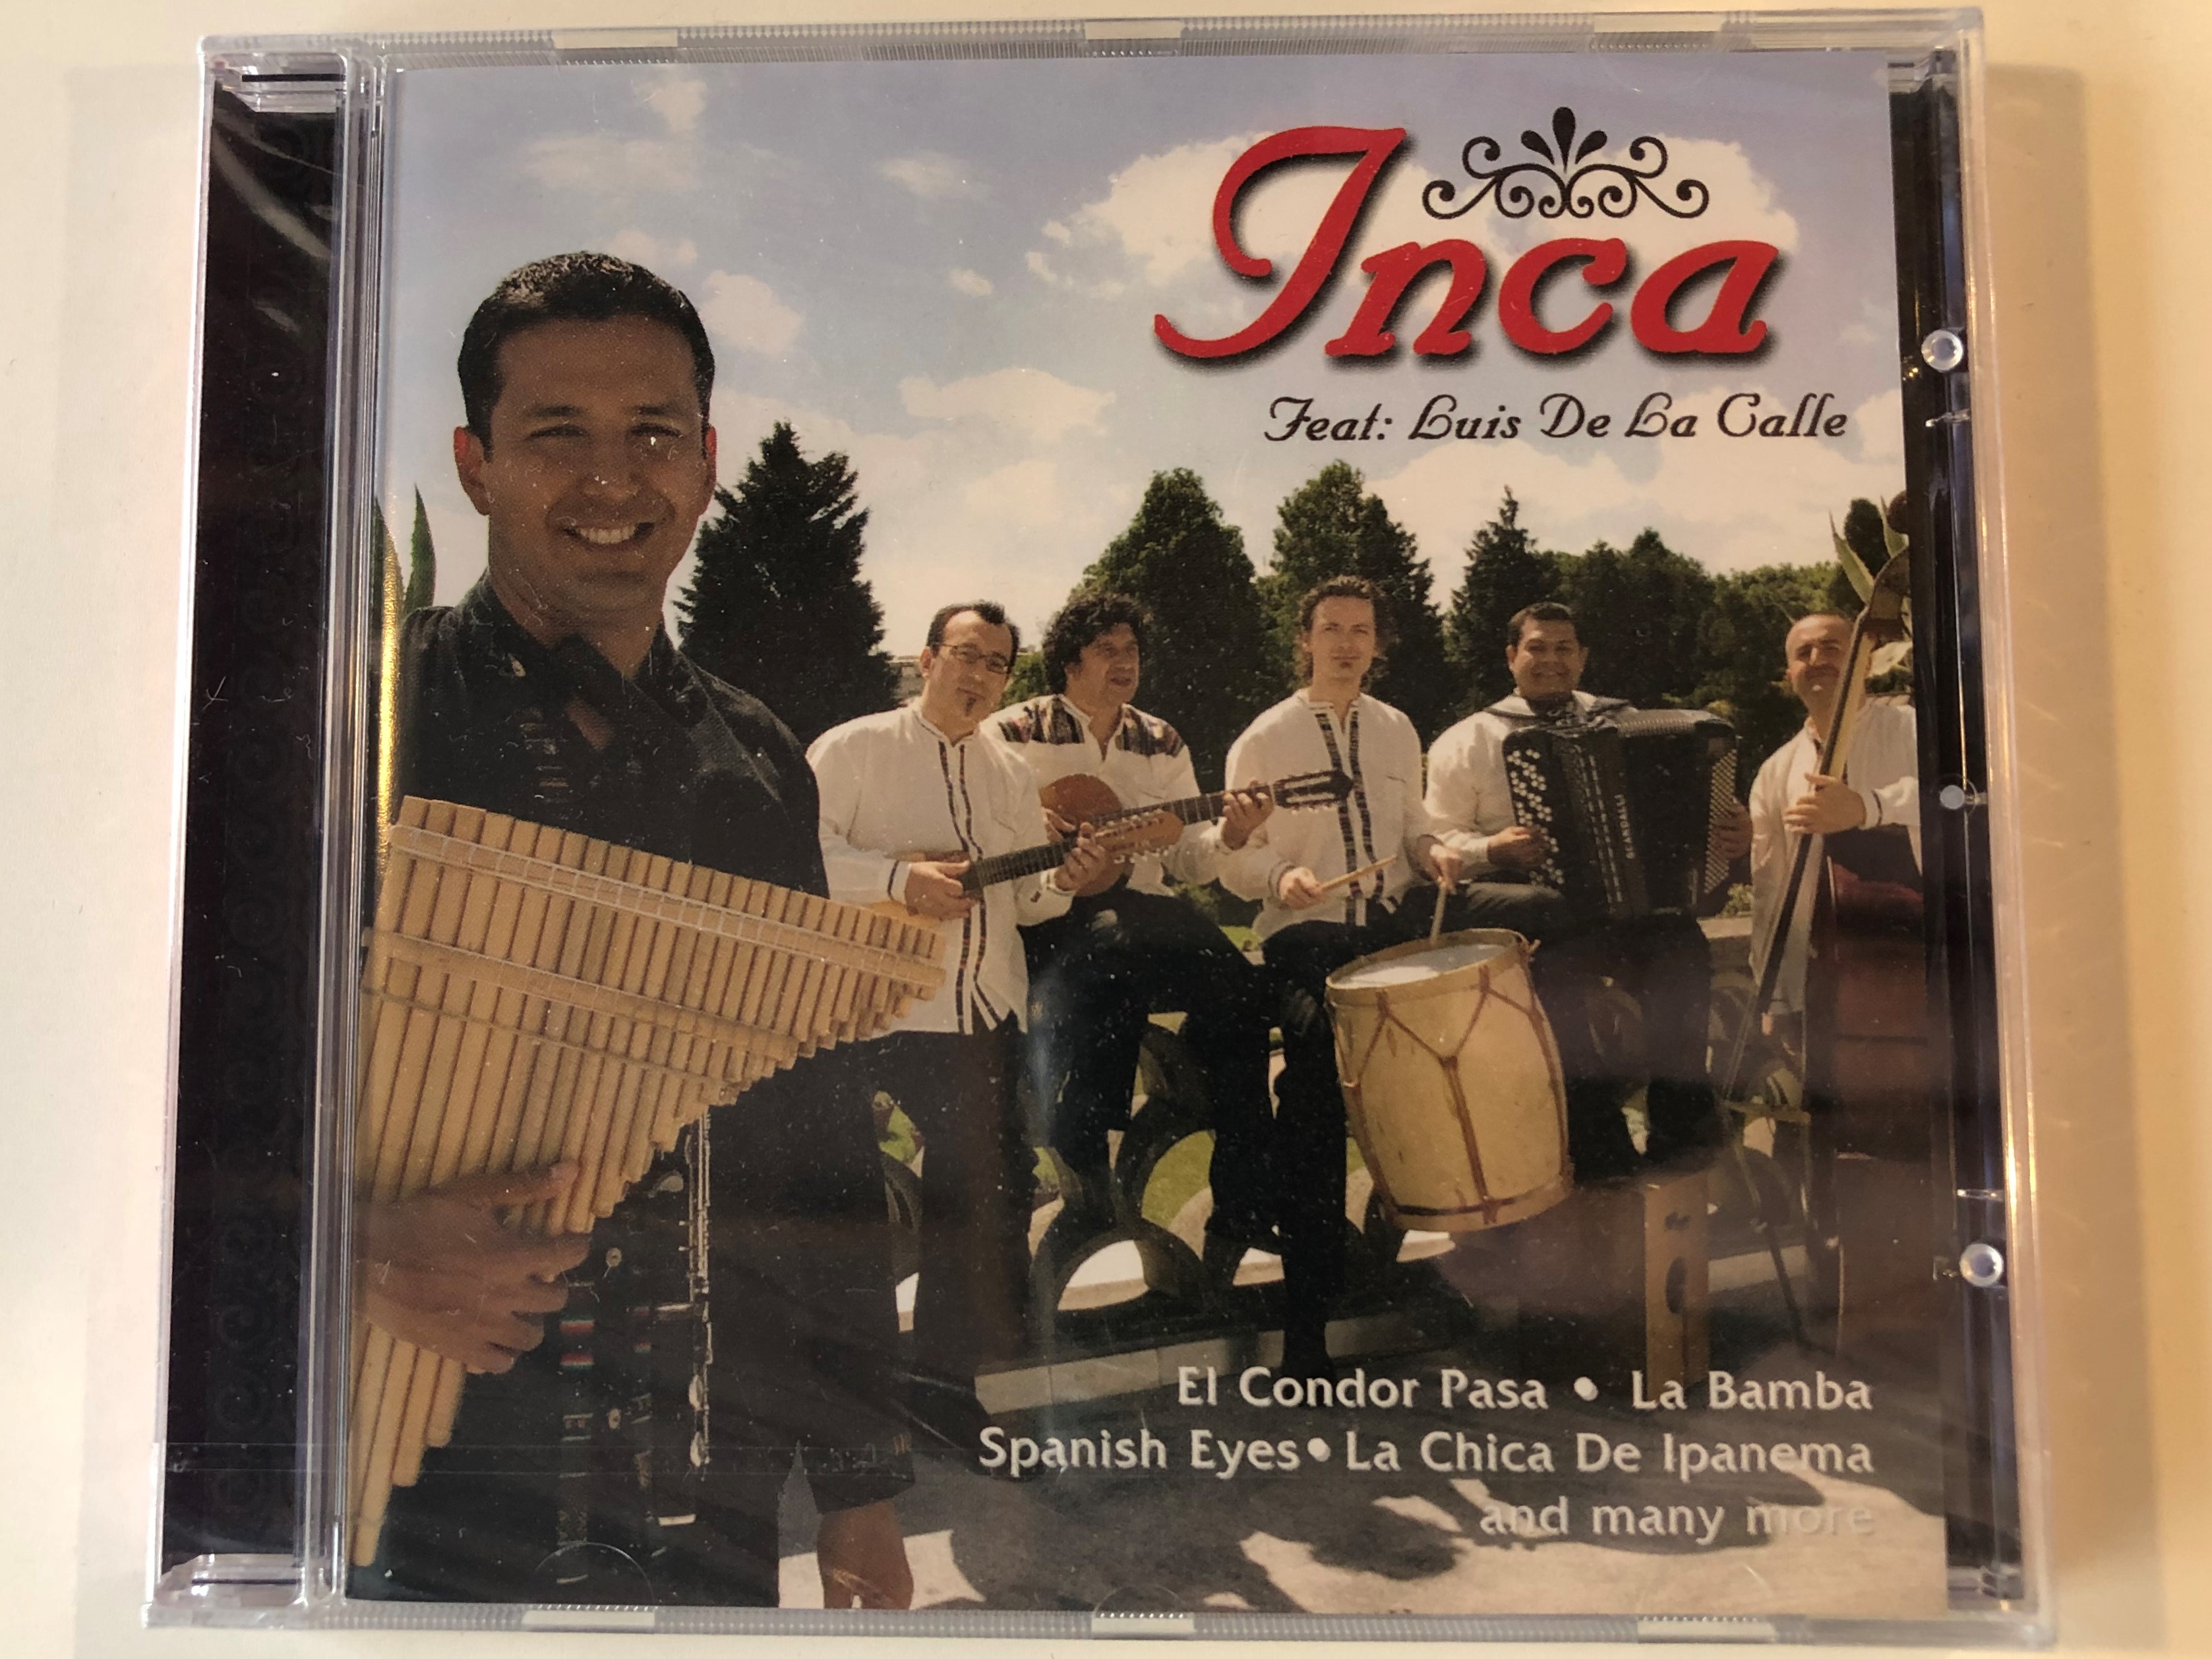 inca-feat-luis-de-la-calle-el-condor-pasa-la-bamba-spanish-eyes-la-chica-de-ipanema-and-many-more-my-way-music-audio-cd-2005-m-20060-2-1-.jpg